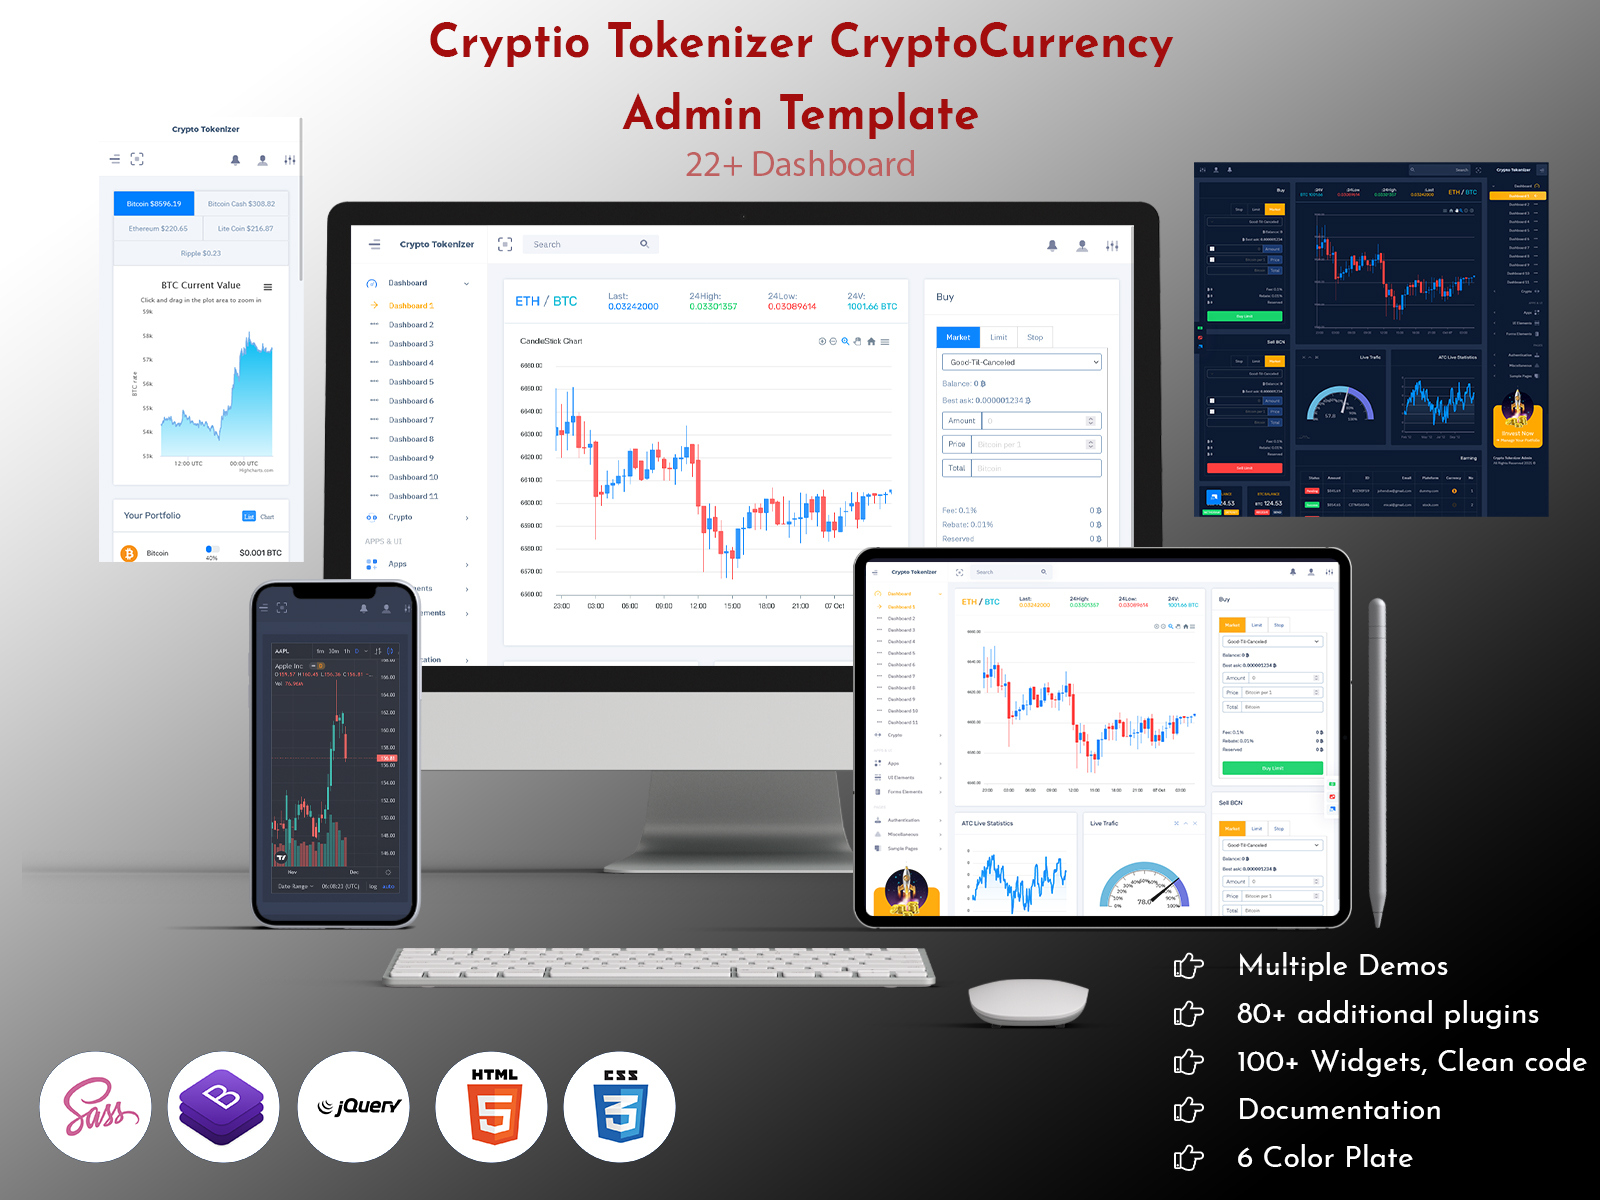 Cryptio Tokenizer Admin Templates